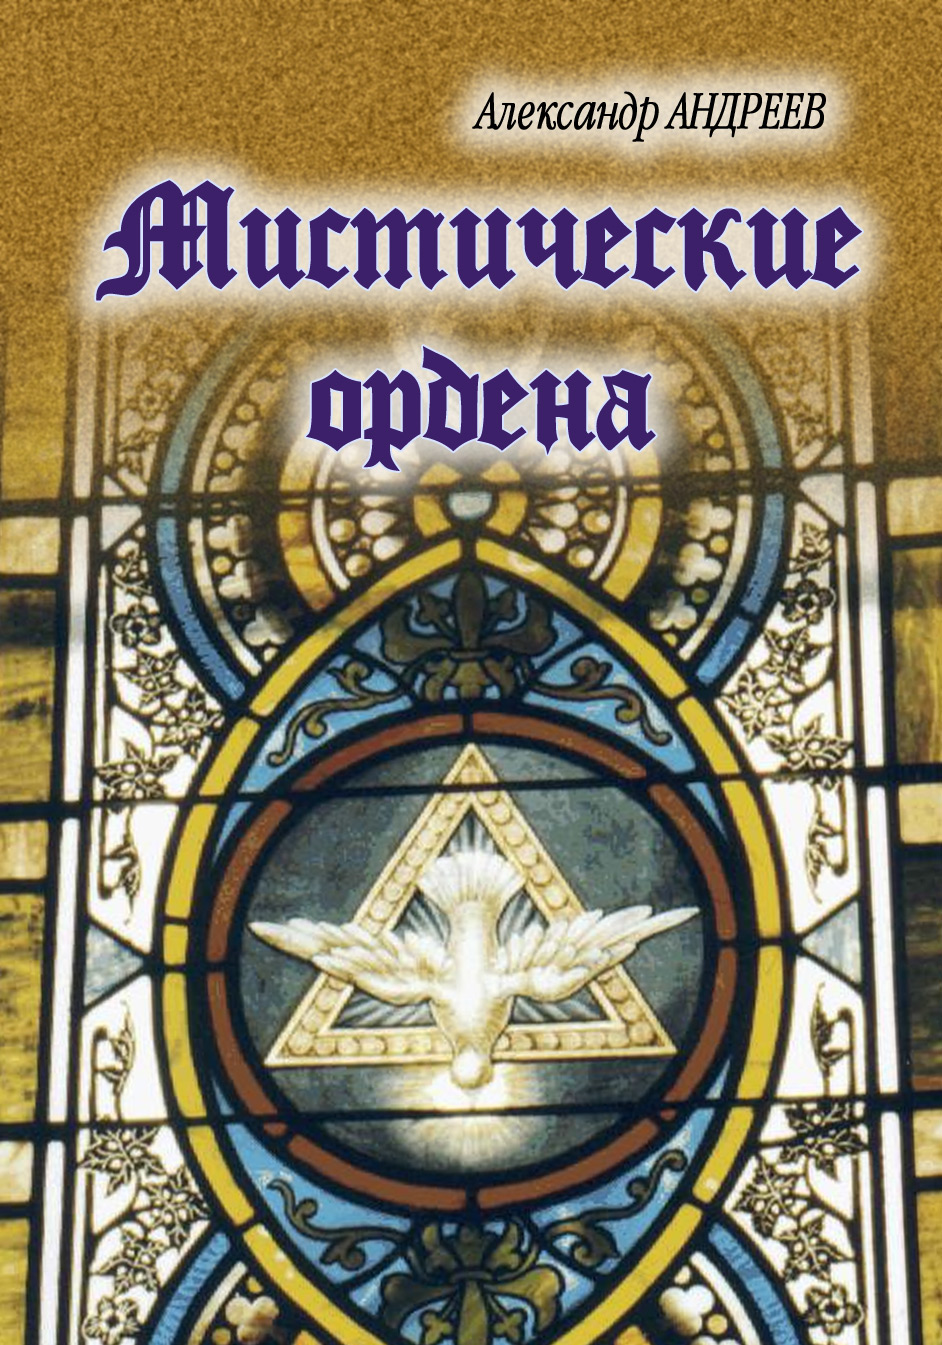 Книга Мистические ордена из серии , созданная Александр Андреев, Максим Андреев, может относится к жанру История. Стоимость книги Мистические ордена  с идентификатором 605975 составляет 54.99 руб.